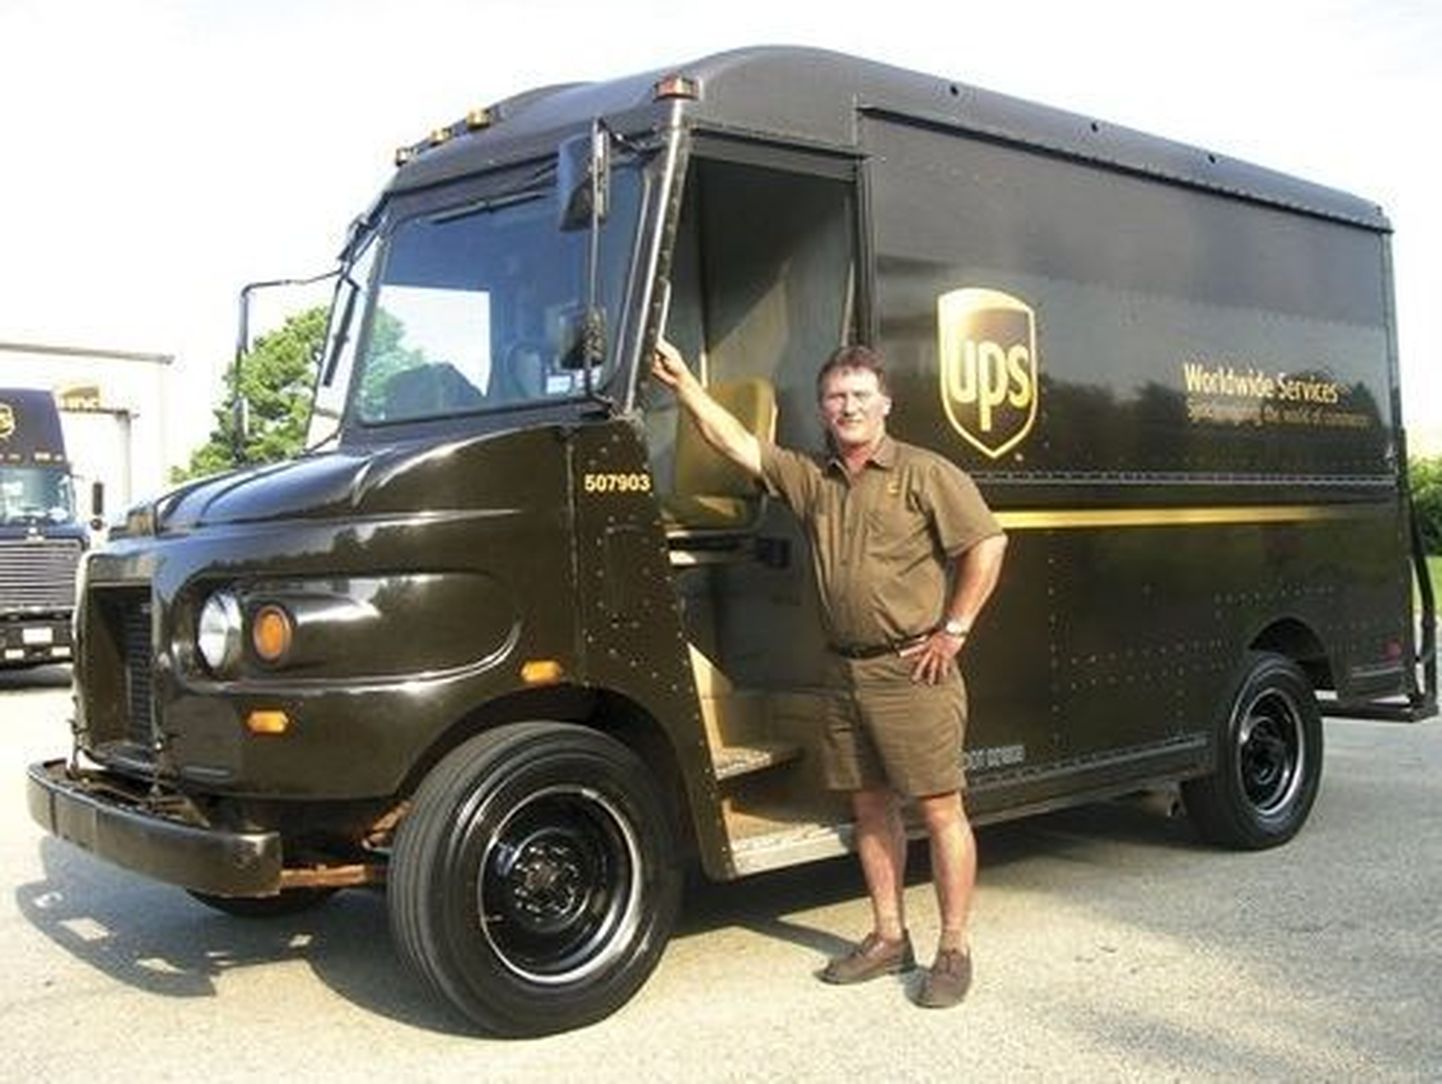 UPSi kuller Brent Boyd on oma tööautoga läbinud üks miljon miili